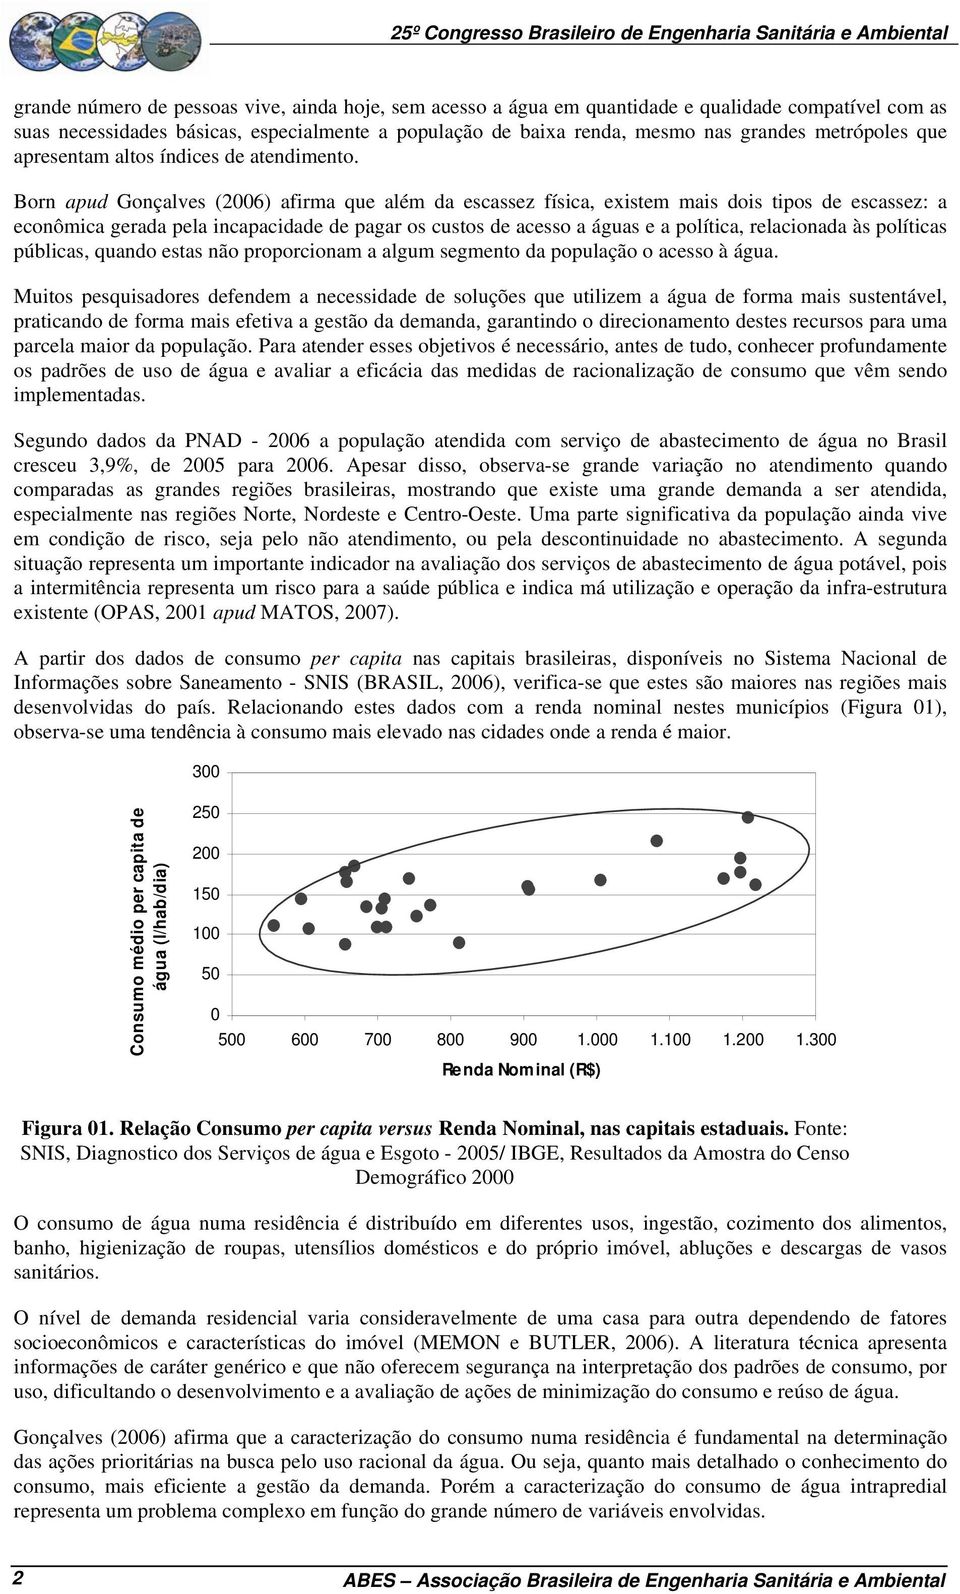 Born apud Gonçalves (2006) afirma que além da escassez física, existem mais dois tipos de escassez: a econômica gerada pela incapacidade de pagar os custos de acesso a águas e a política, relacionada